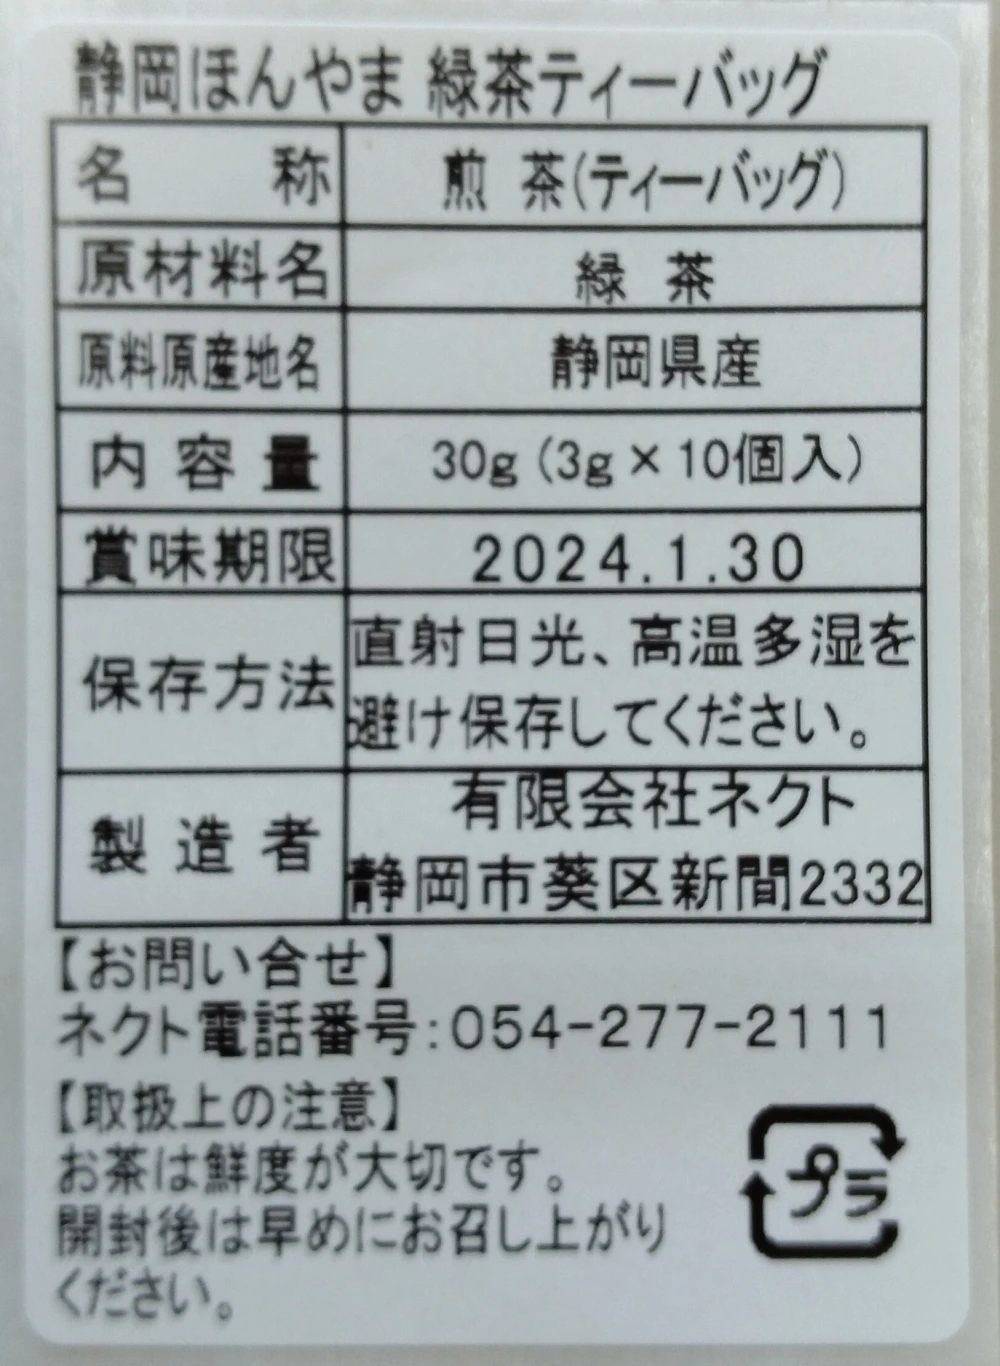 静岡ほんやま緑茶ティーバッグ　2袋セット